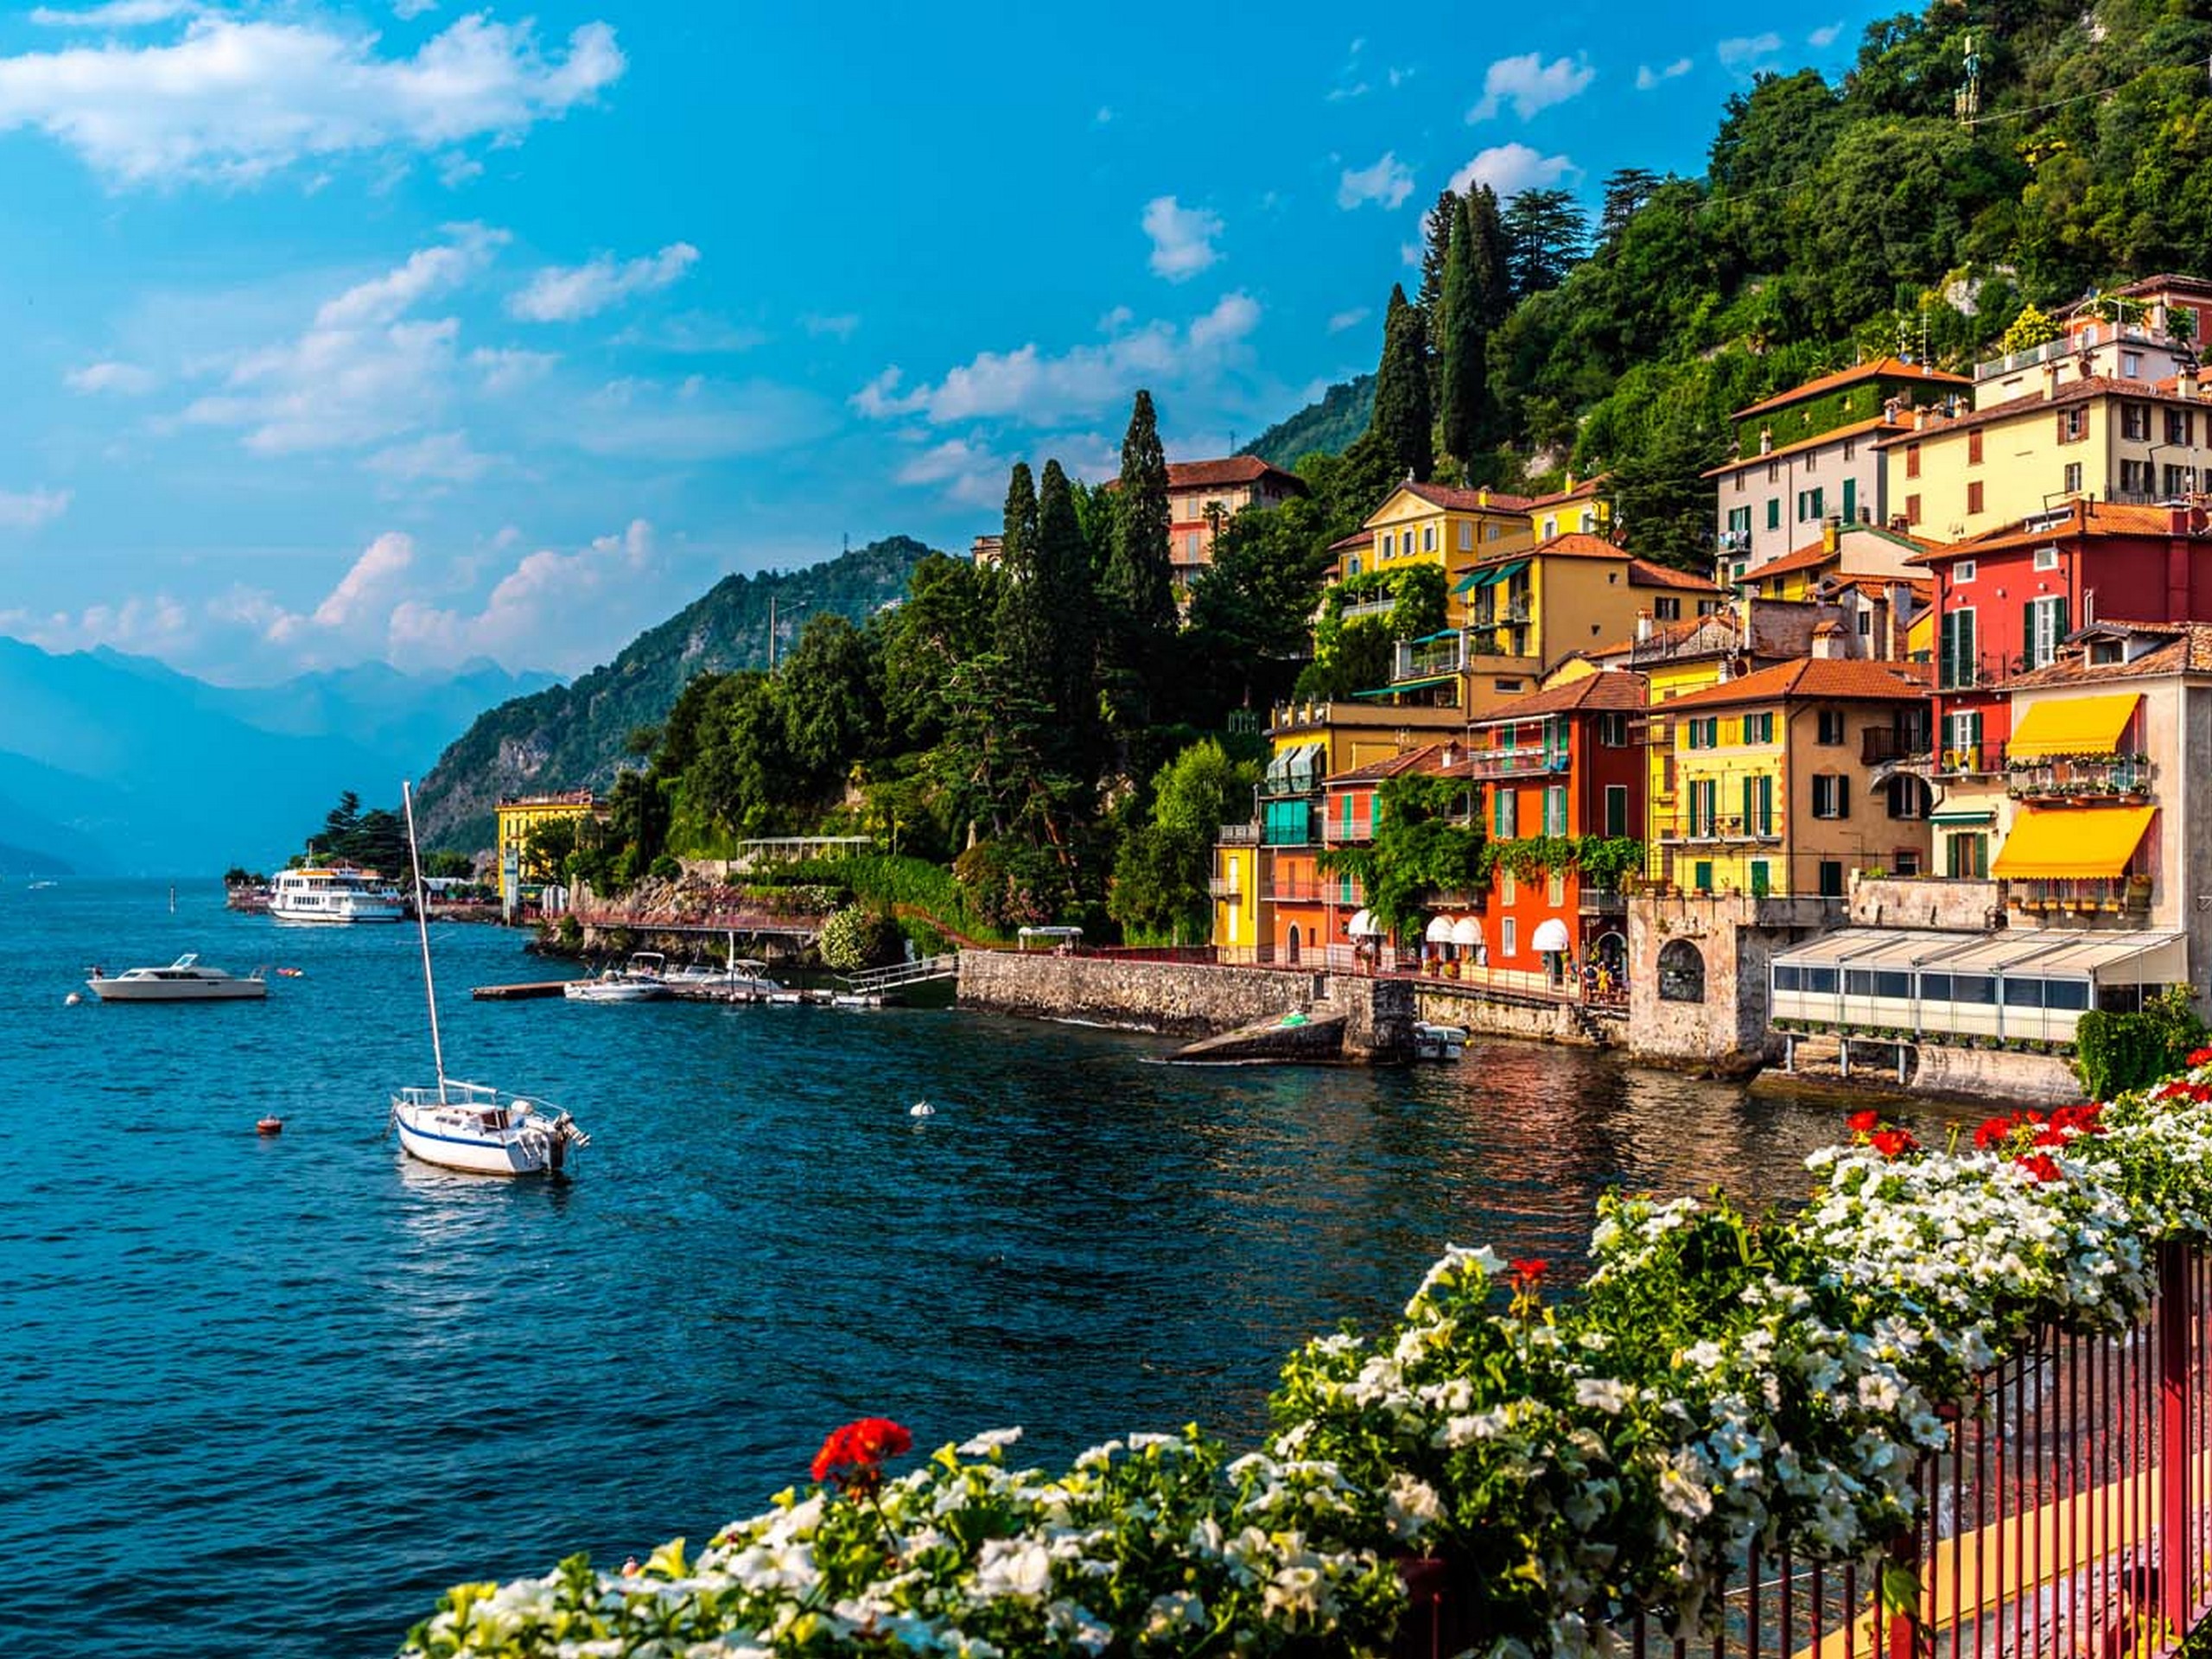 Menaggio town near Lake Como